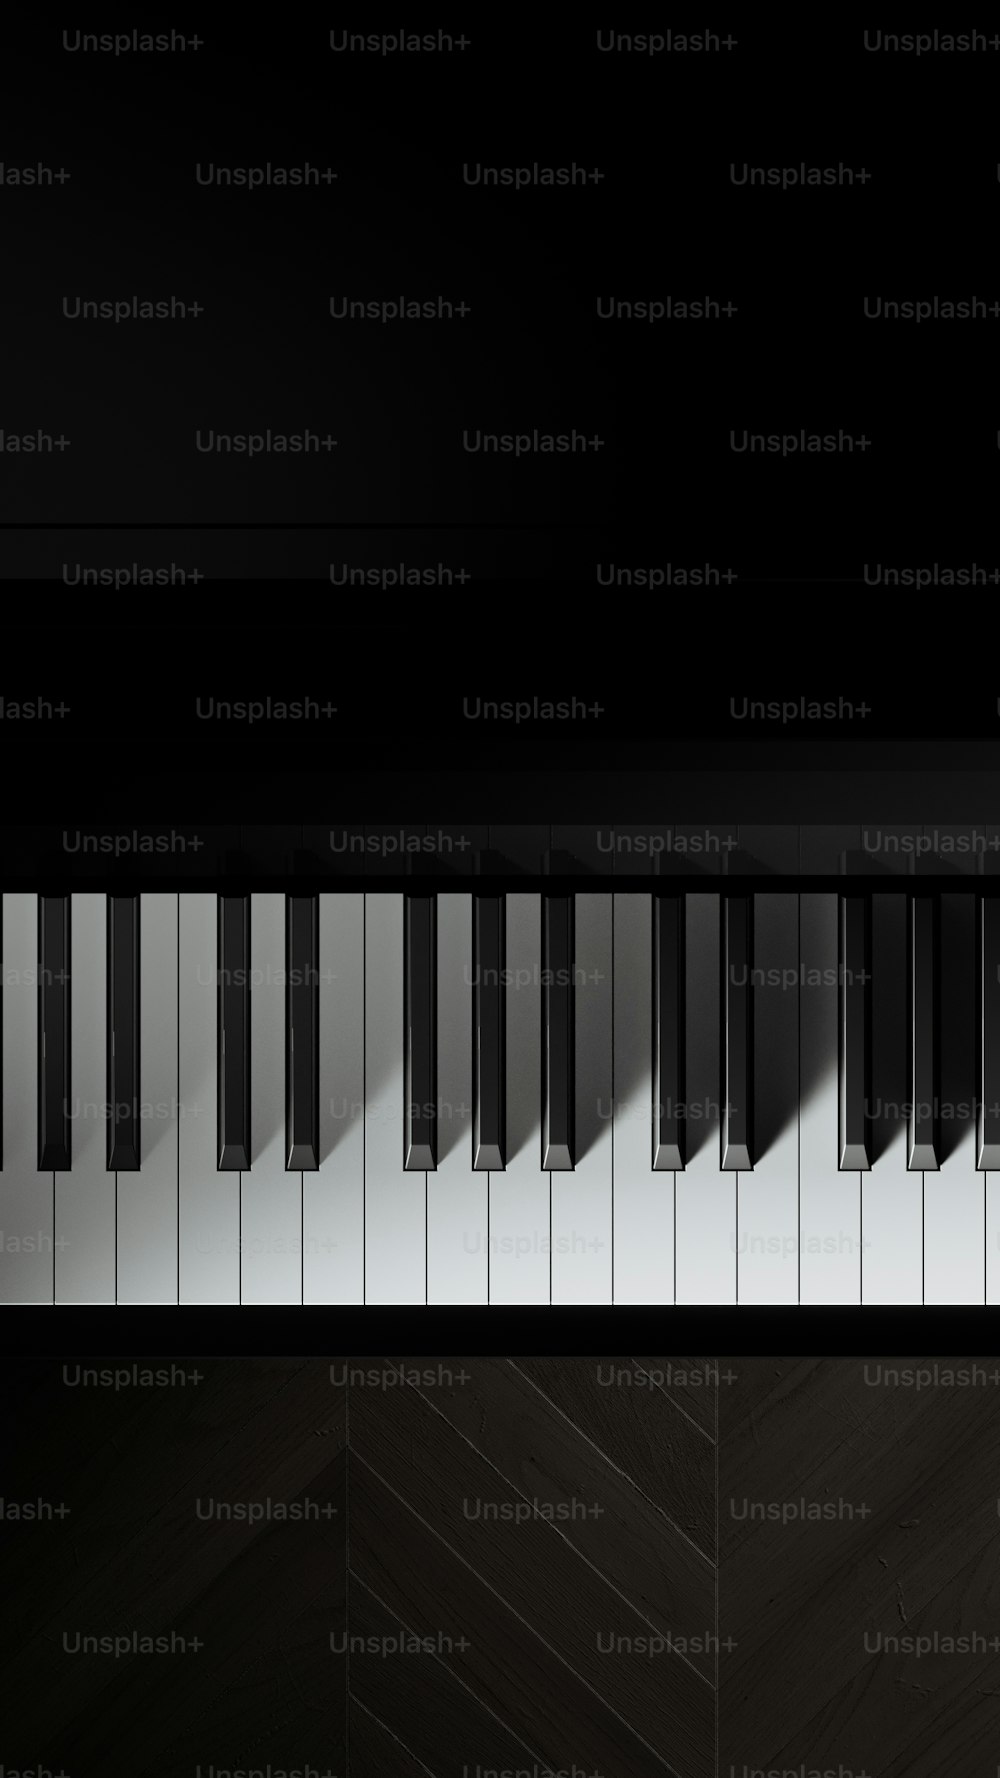 ein Schwarz-Weiß-Foto eines Klaviers